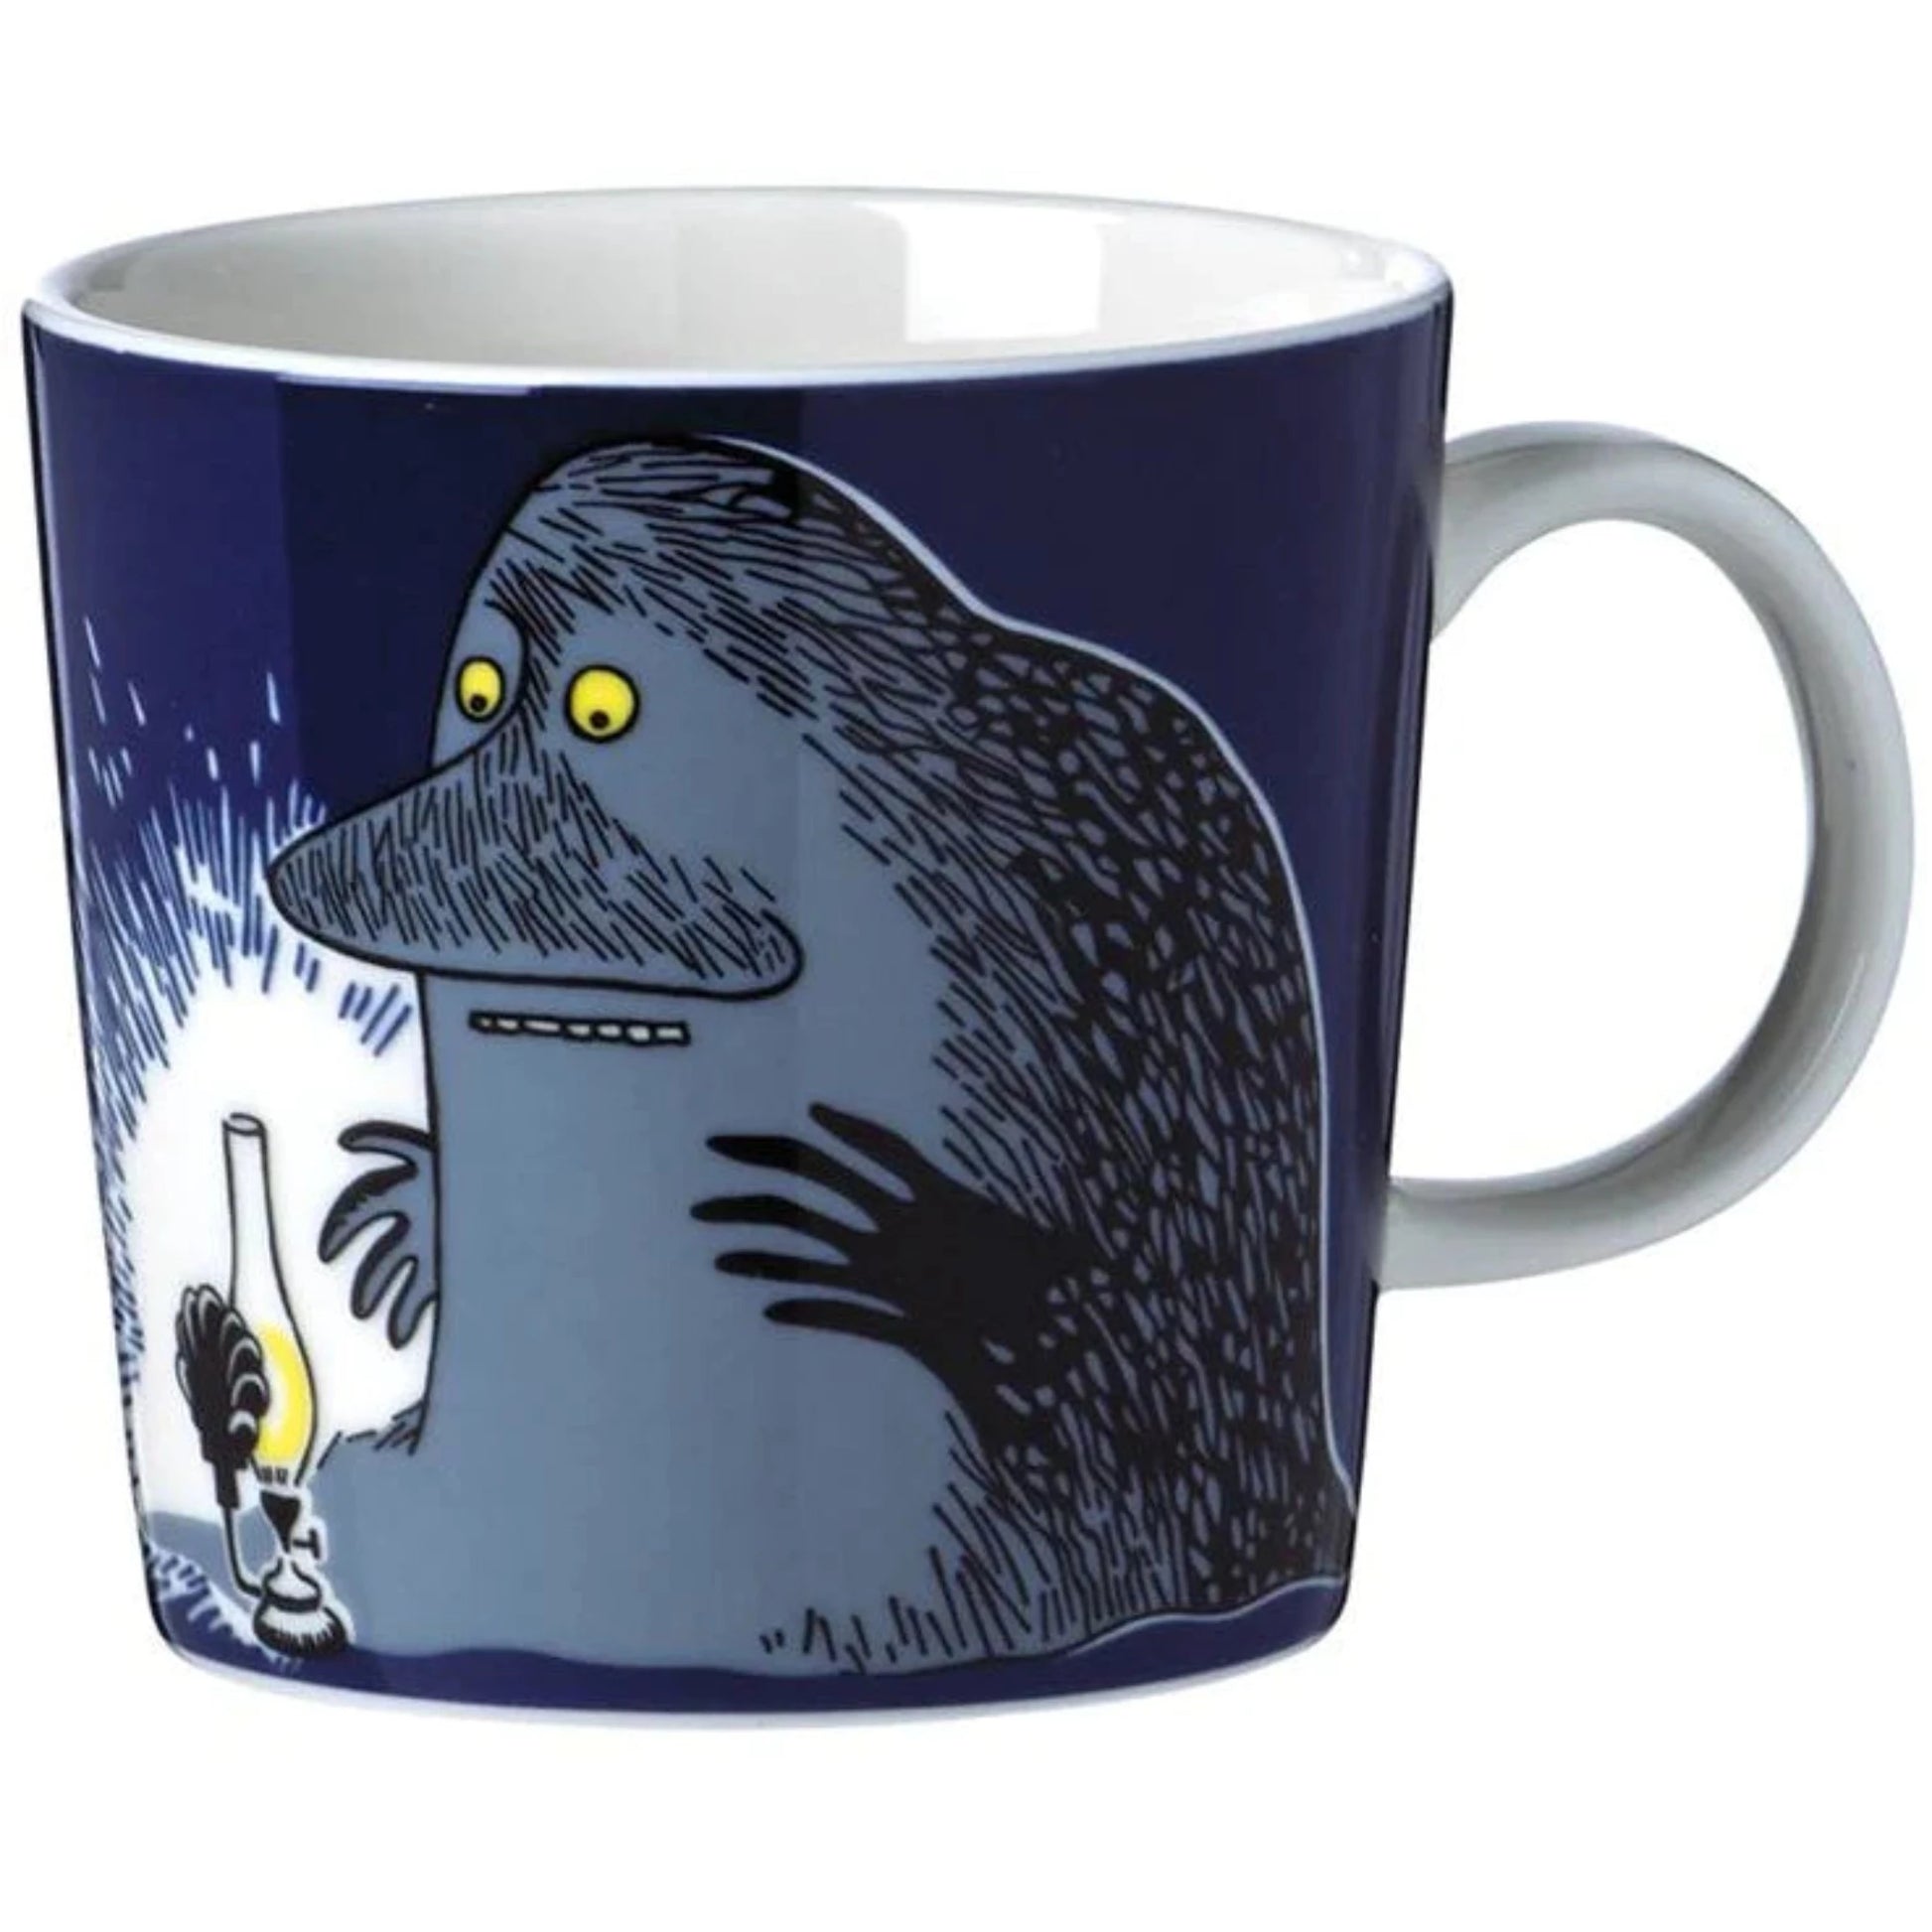 Moomin Mug by Arabia, The Groke (6702001717313)